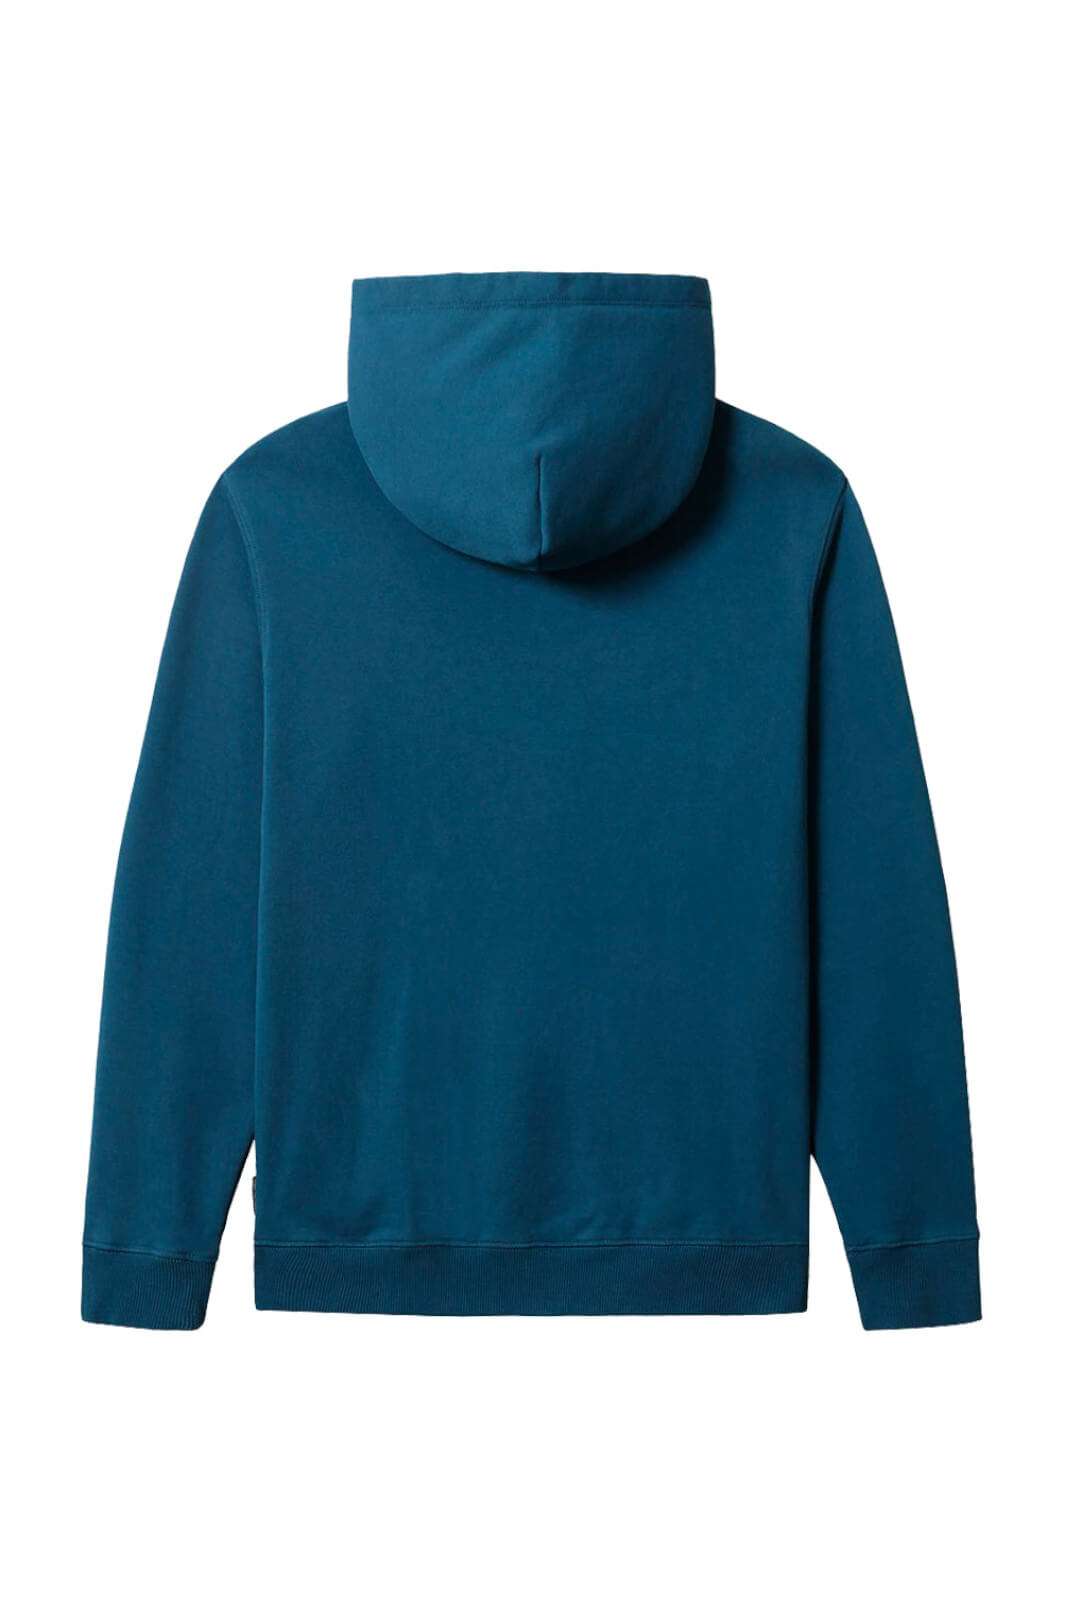 Napapijri Men's hooded sweatshirt B-ROEN H